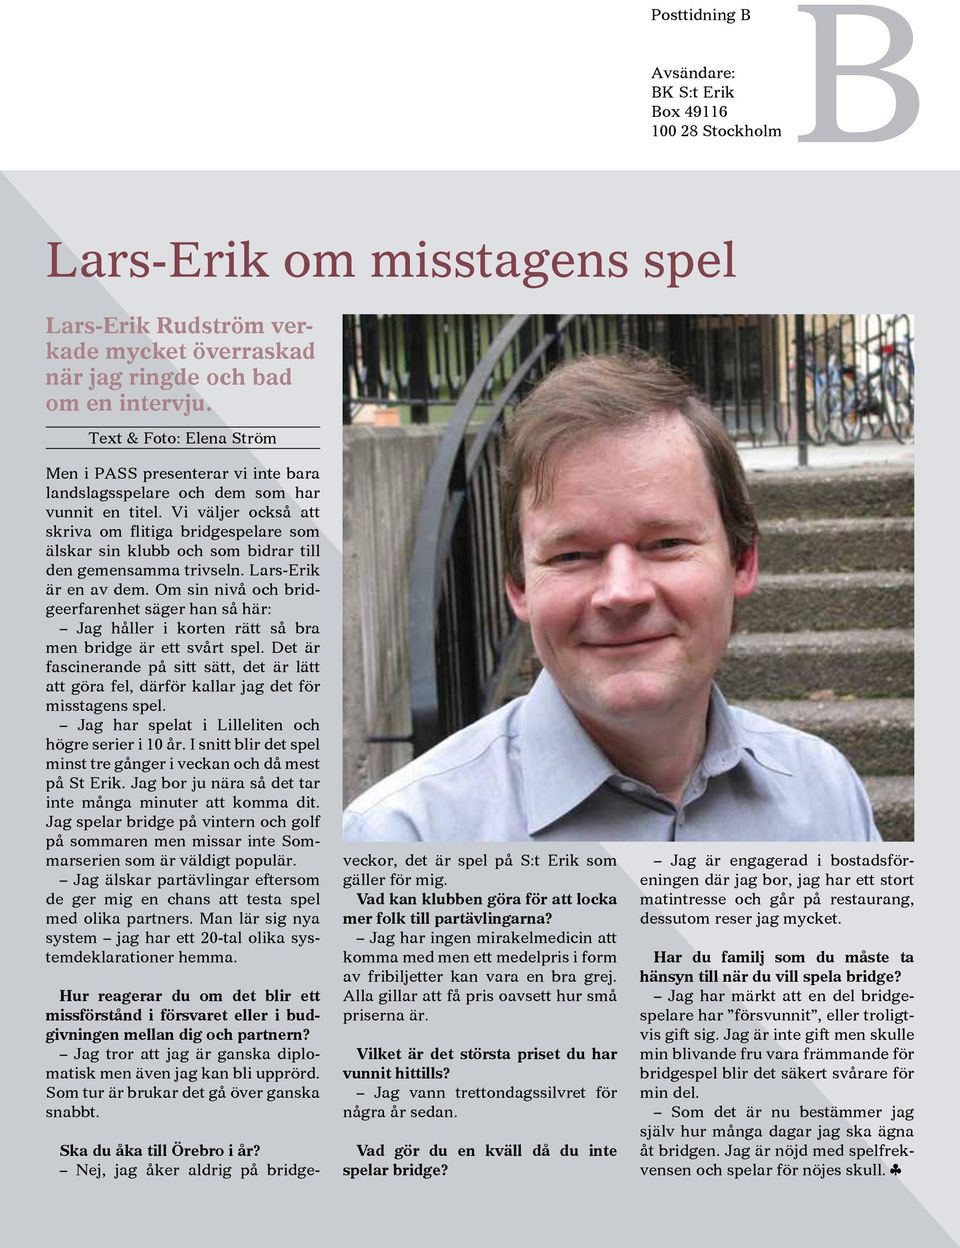 Vi väljer också att skriva om flitiga bridgespelare som älskar sin klubb och som bidrar till den gemensamma trivseln. Lars-Erik är en av dem.